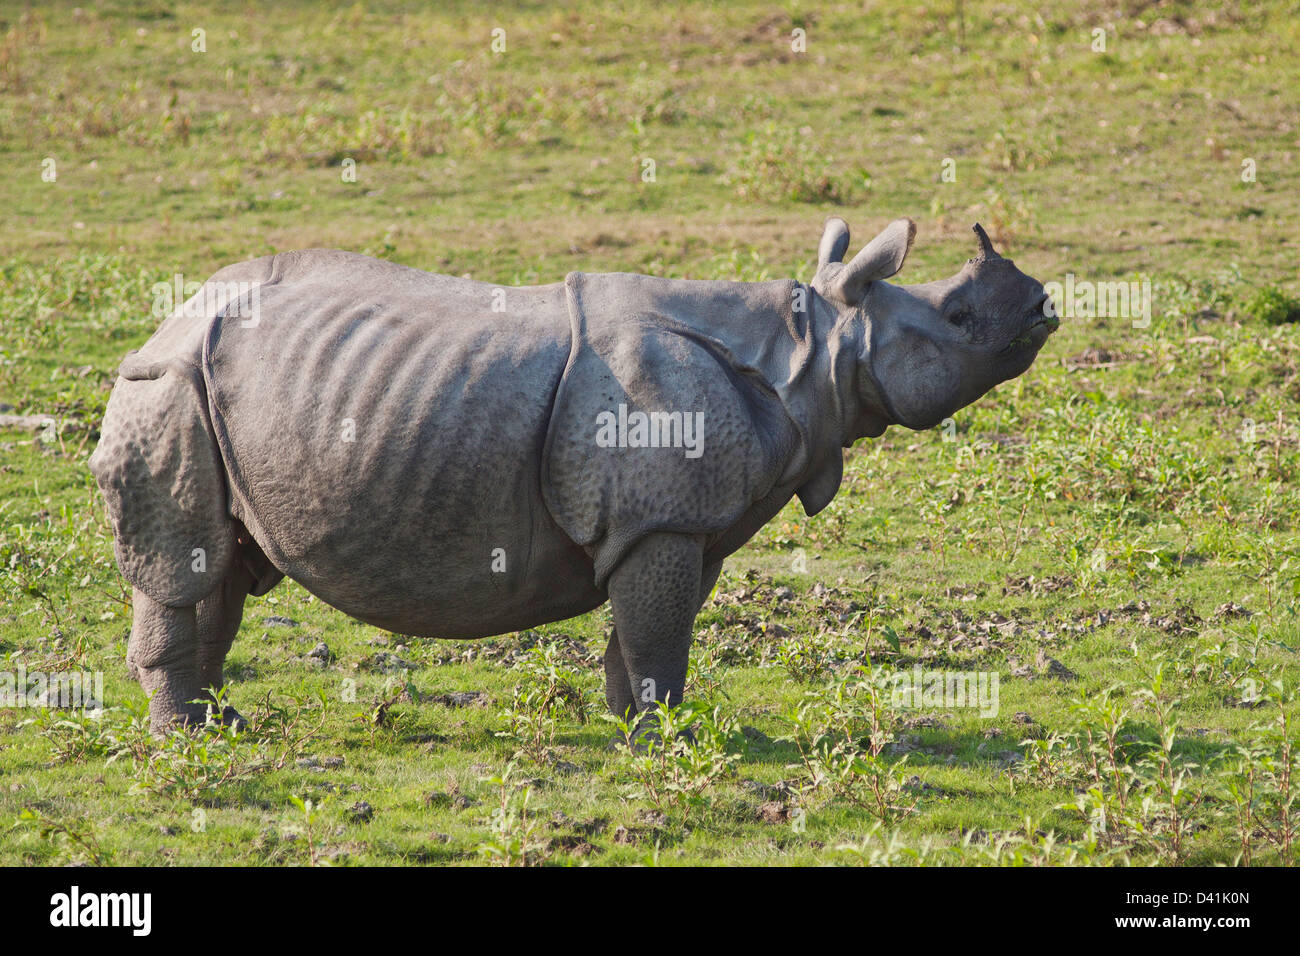 Un rhinocéros unicornes dans l'herbe des terres, le parc national de Kaziranga, Inde Banque D'Images